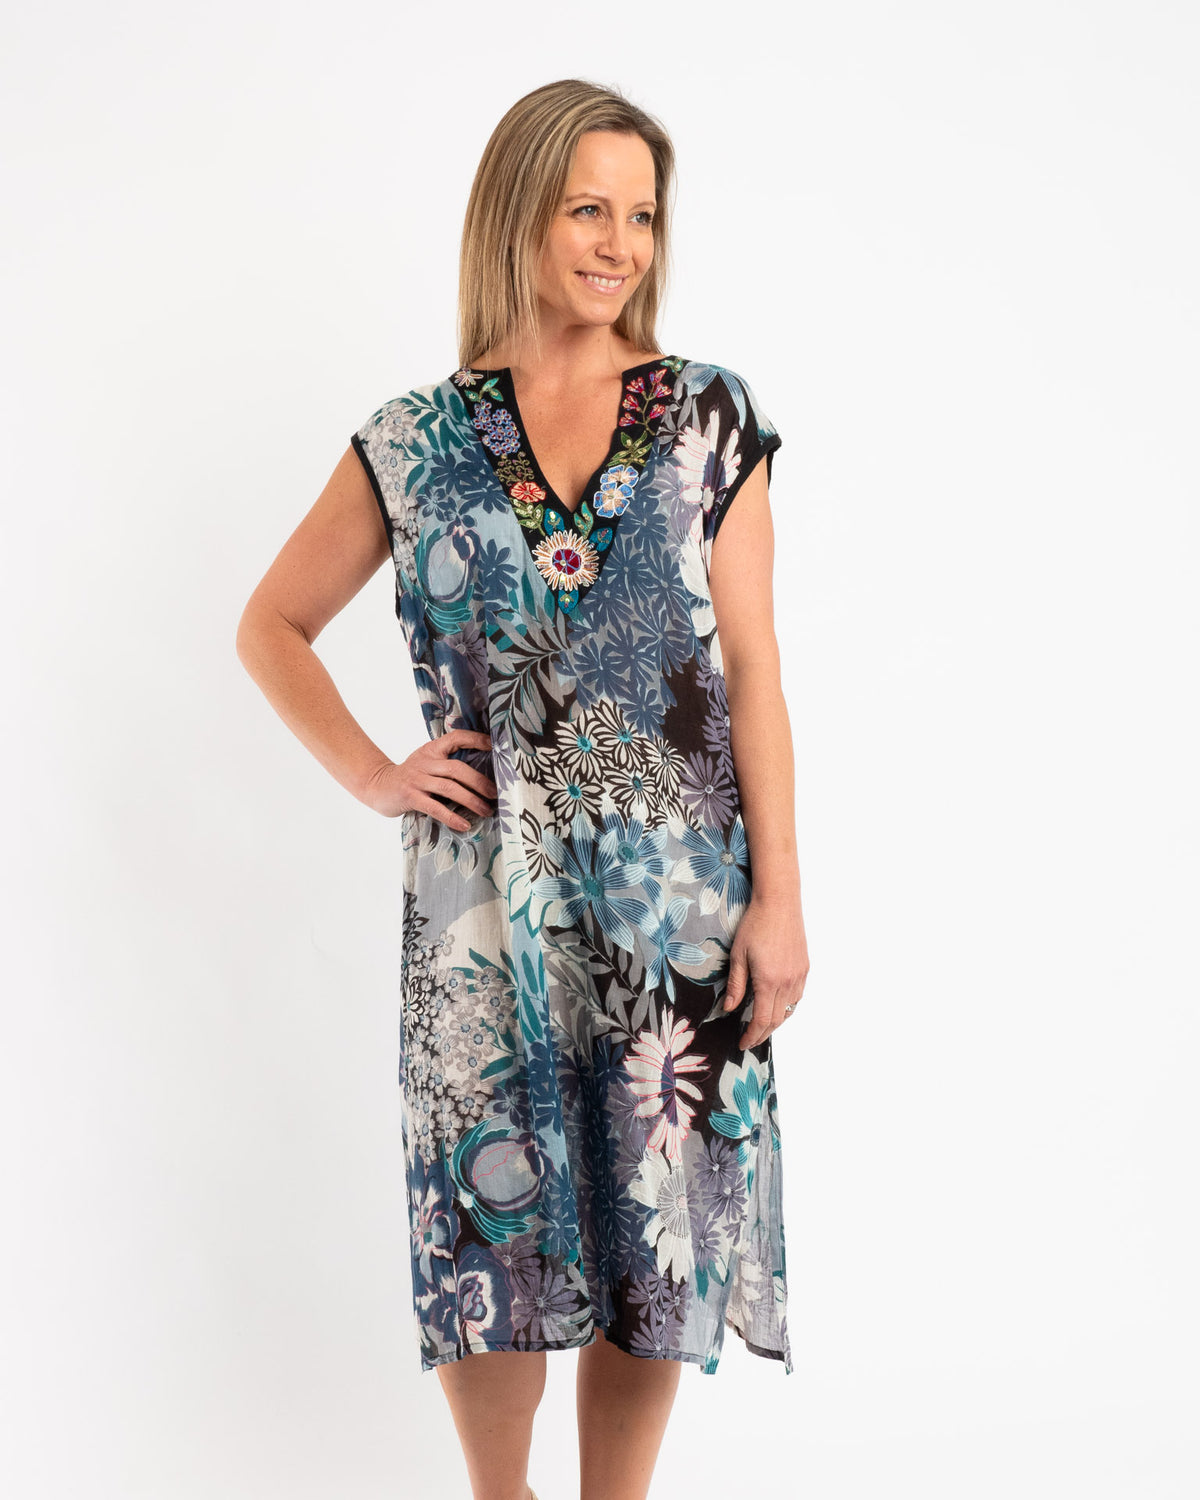 Sleeveless Summer Shift Dress With Embellished V-neck in Blue Grey Floral